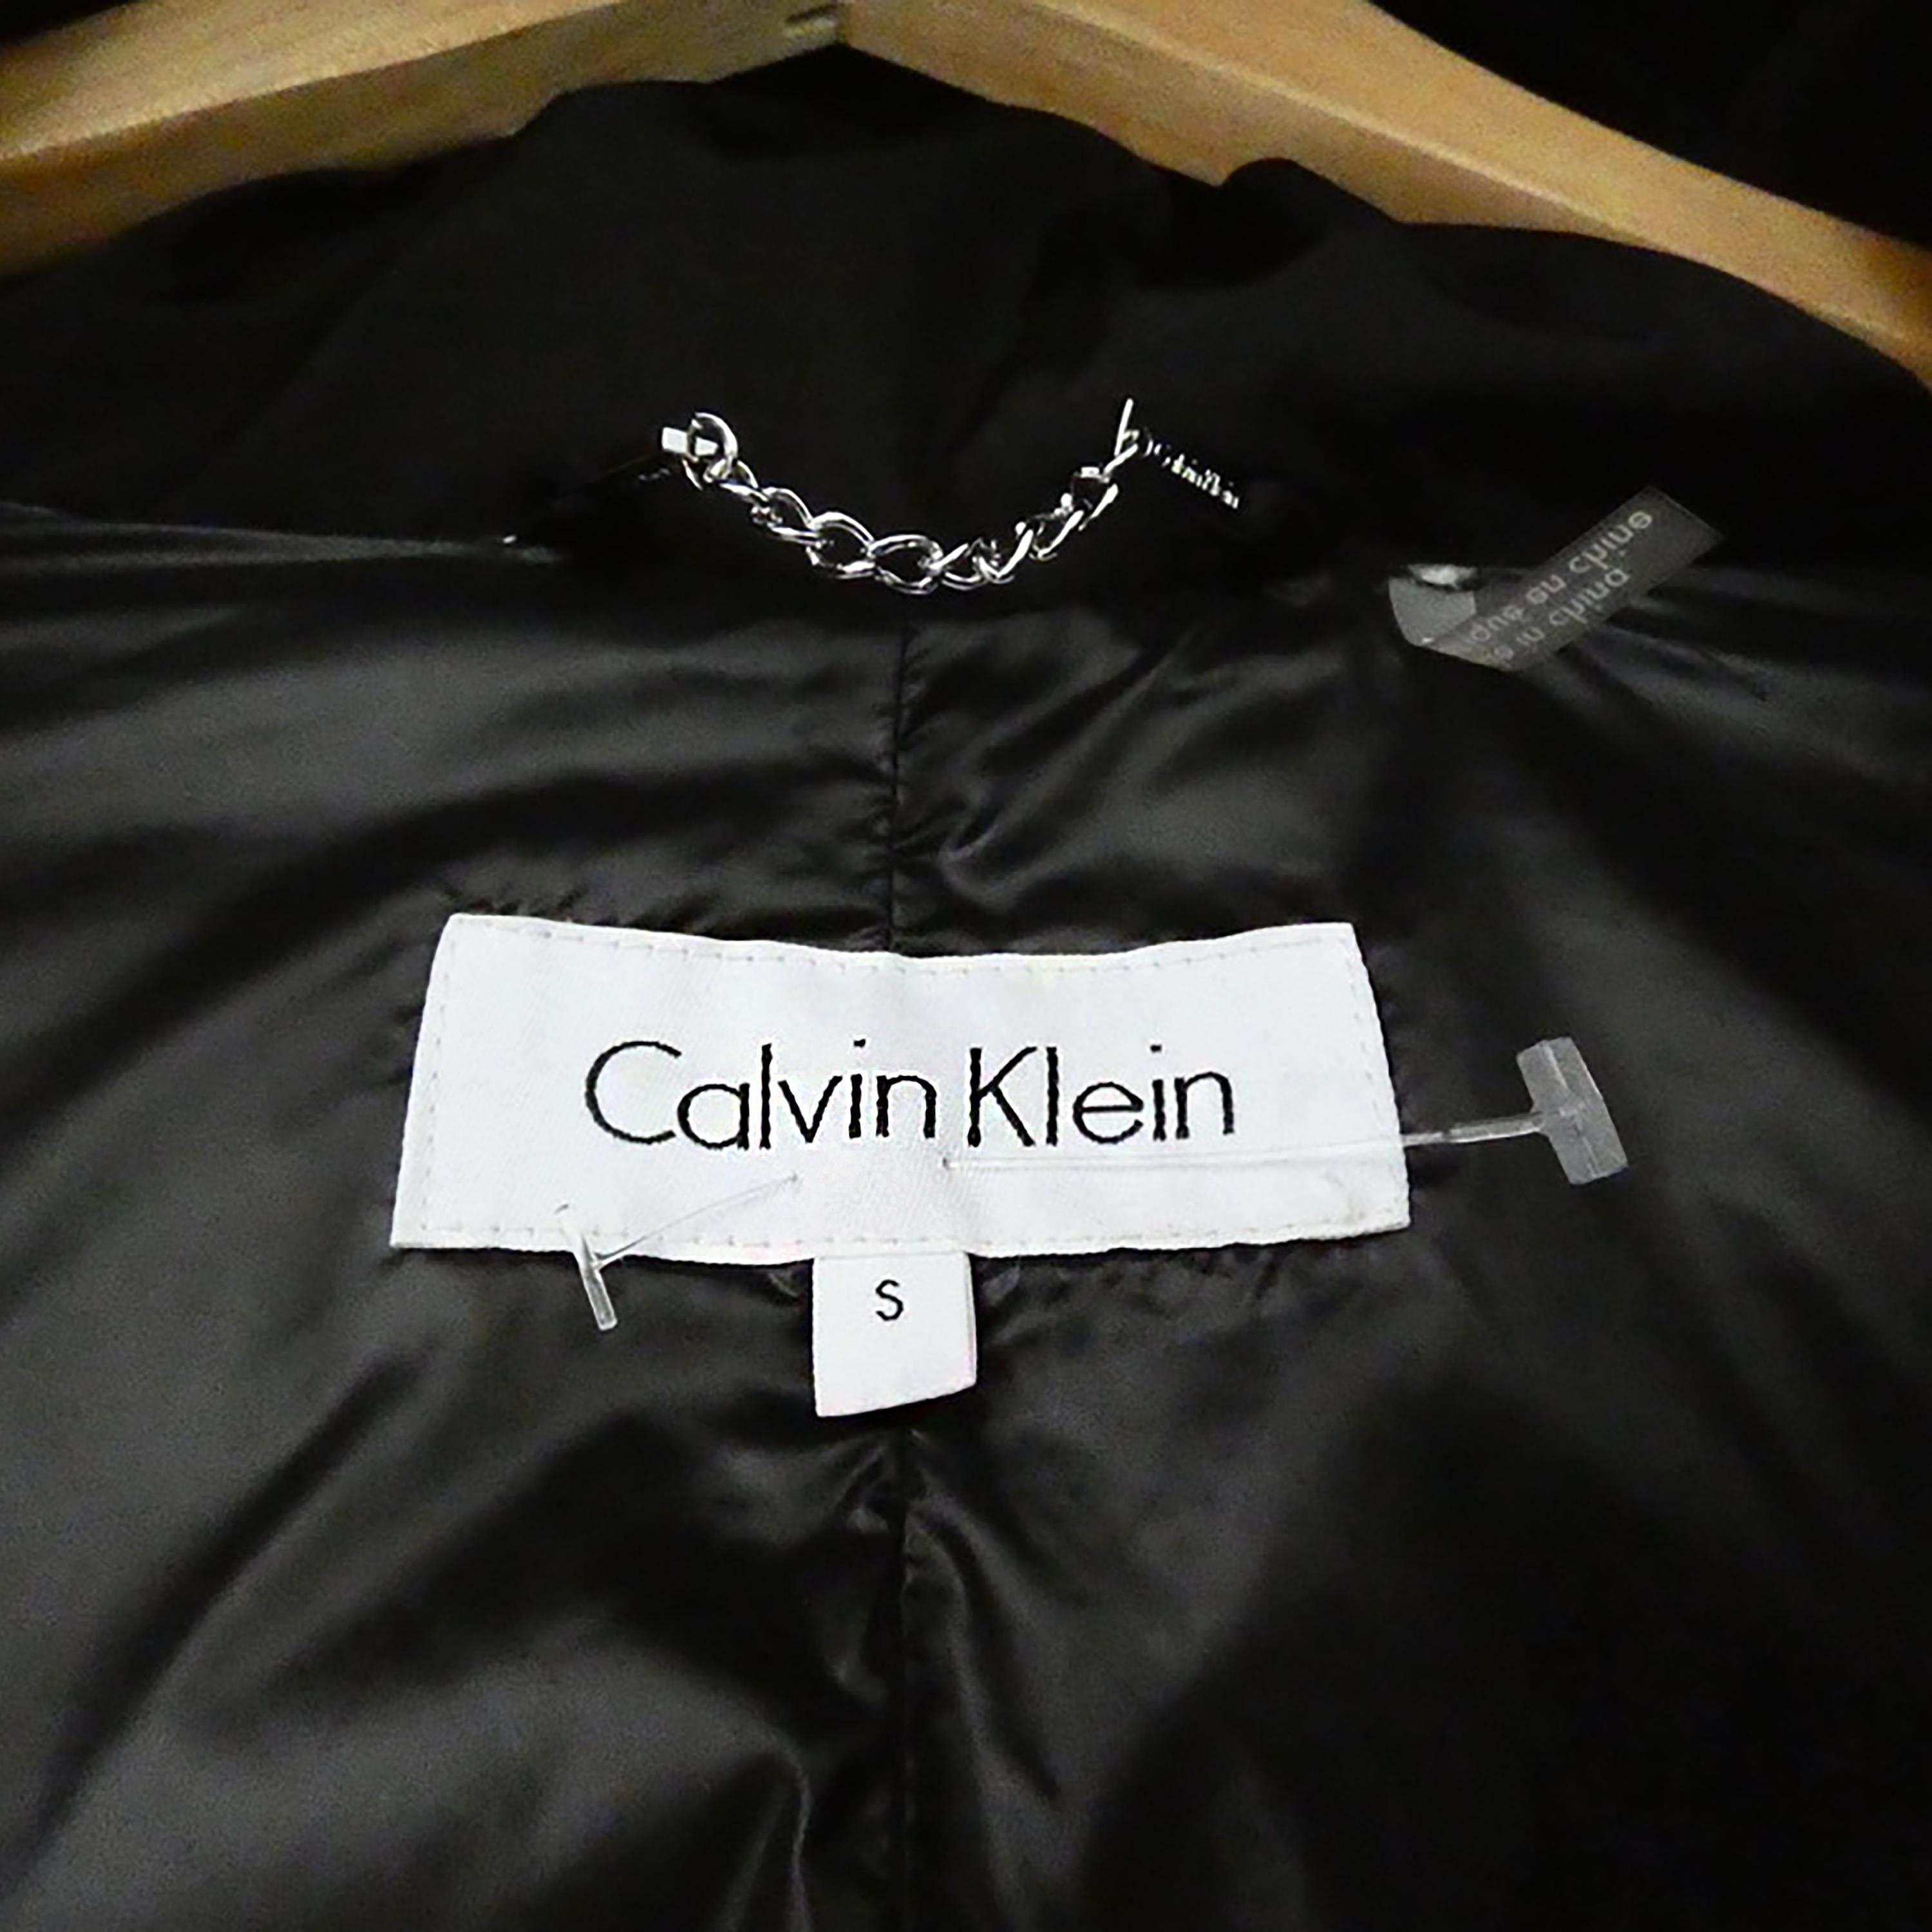 Nouveau manteau fourré 90 % duvet, 10 % plumes de Calvin Klein.
Accessoires en argent brillant, y compris le logo CK sur la manche et les têtes de fermeture à glissière gravées.
NEW.